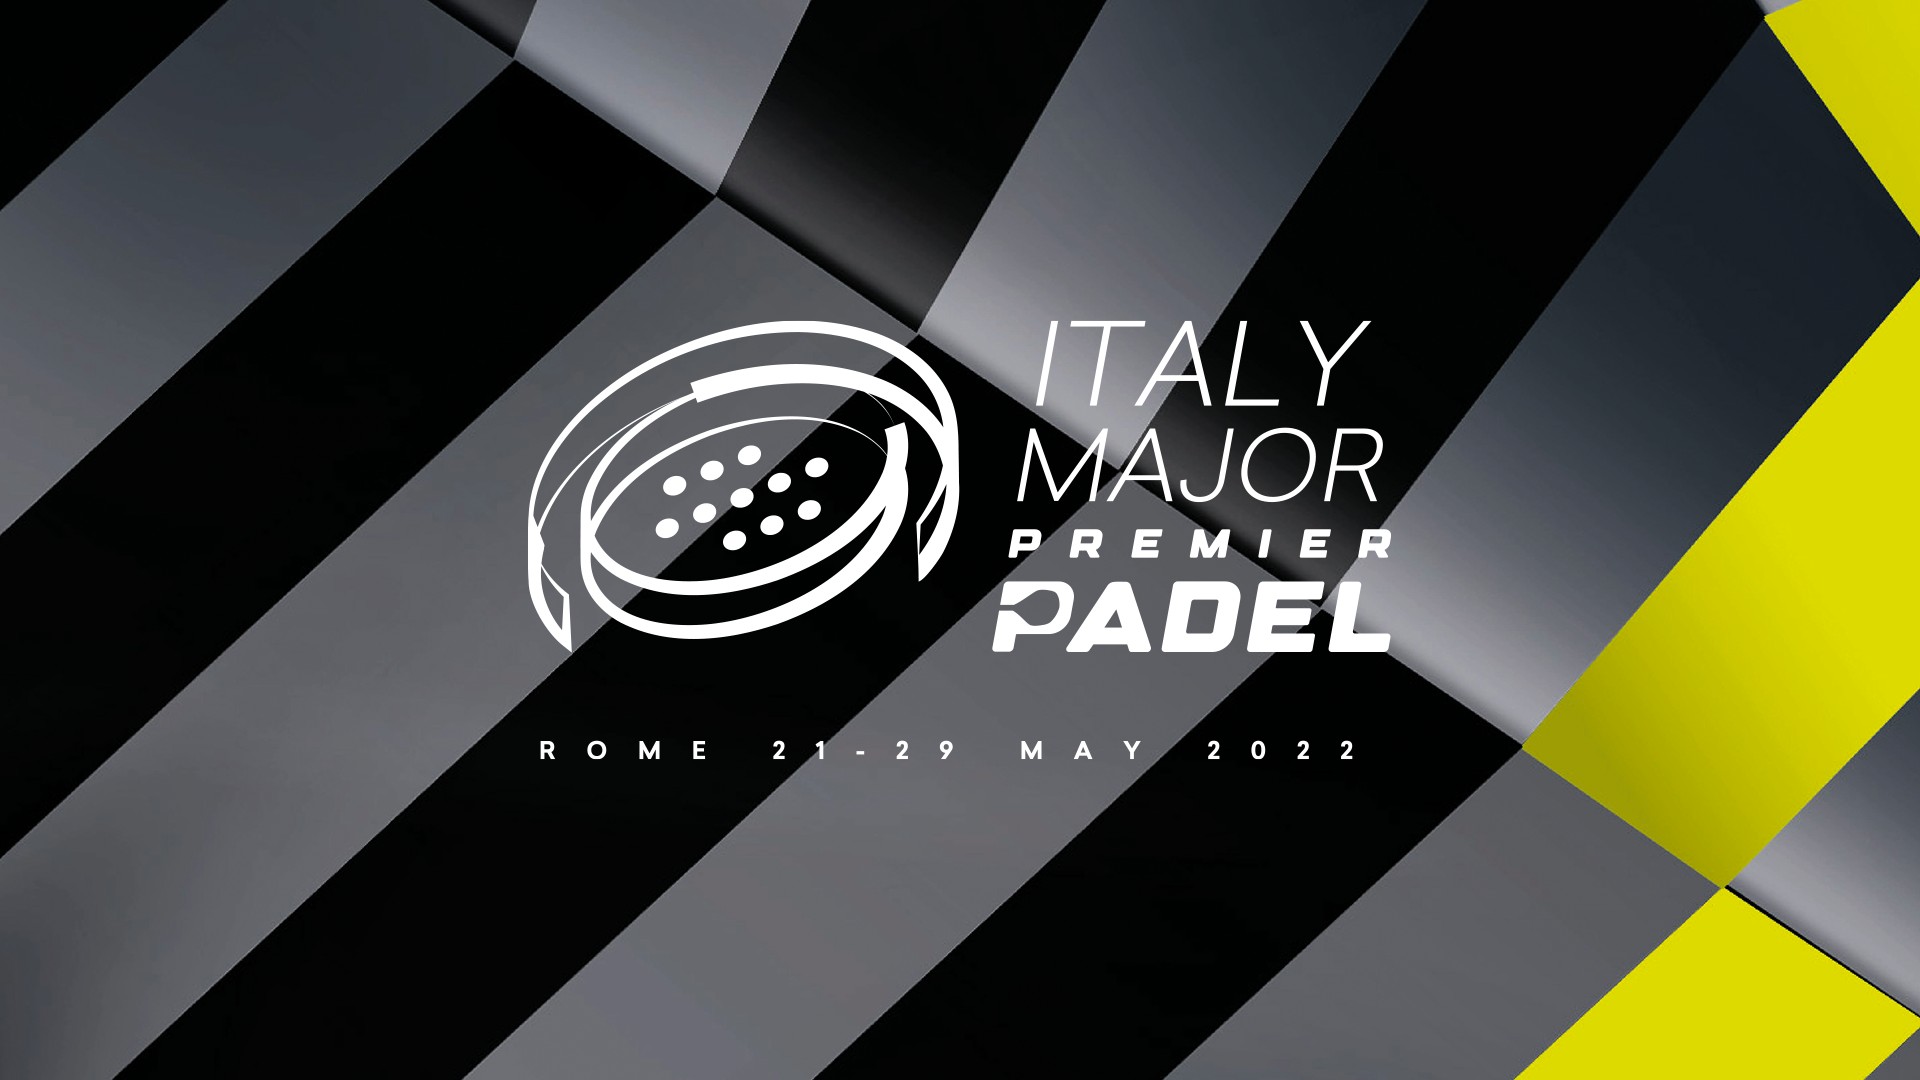 Italy Major Premier Padel go down in history